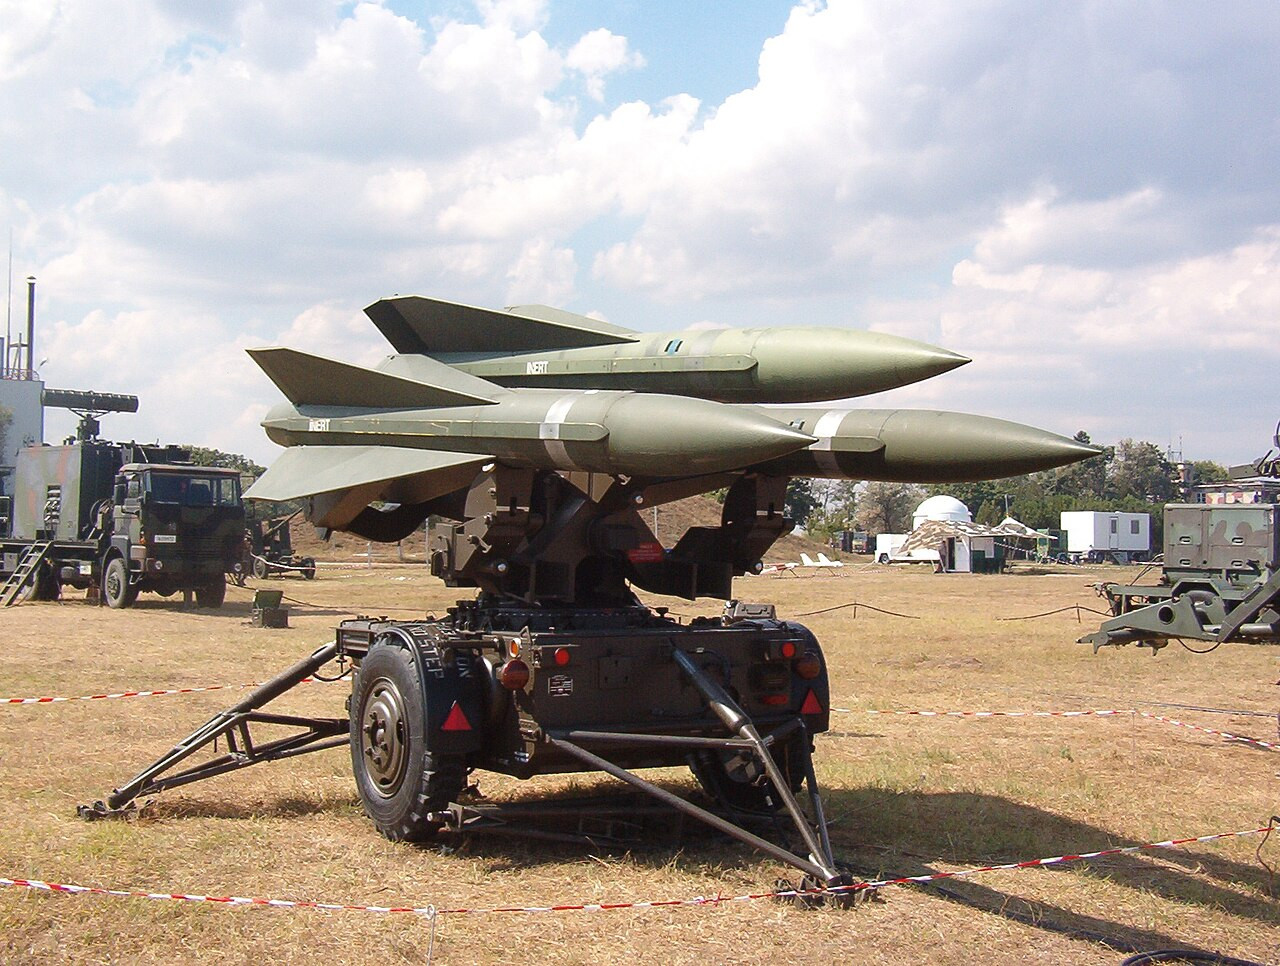 A MIM-23 Hawk légvédelmi rendszer rakétái. A fegyvert Románia is hadrendbe állította 2006-ban. Forrás: Wikipédia